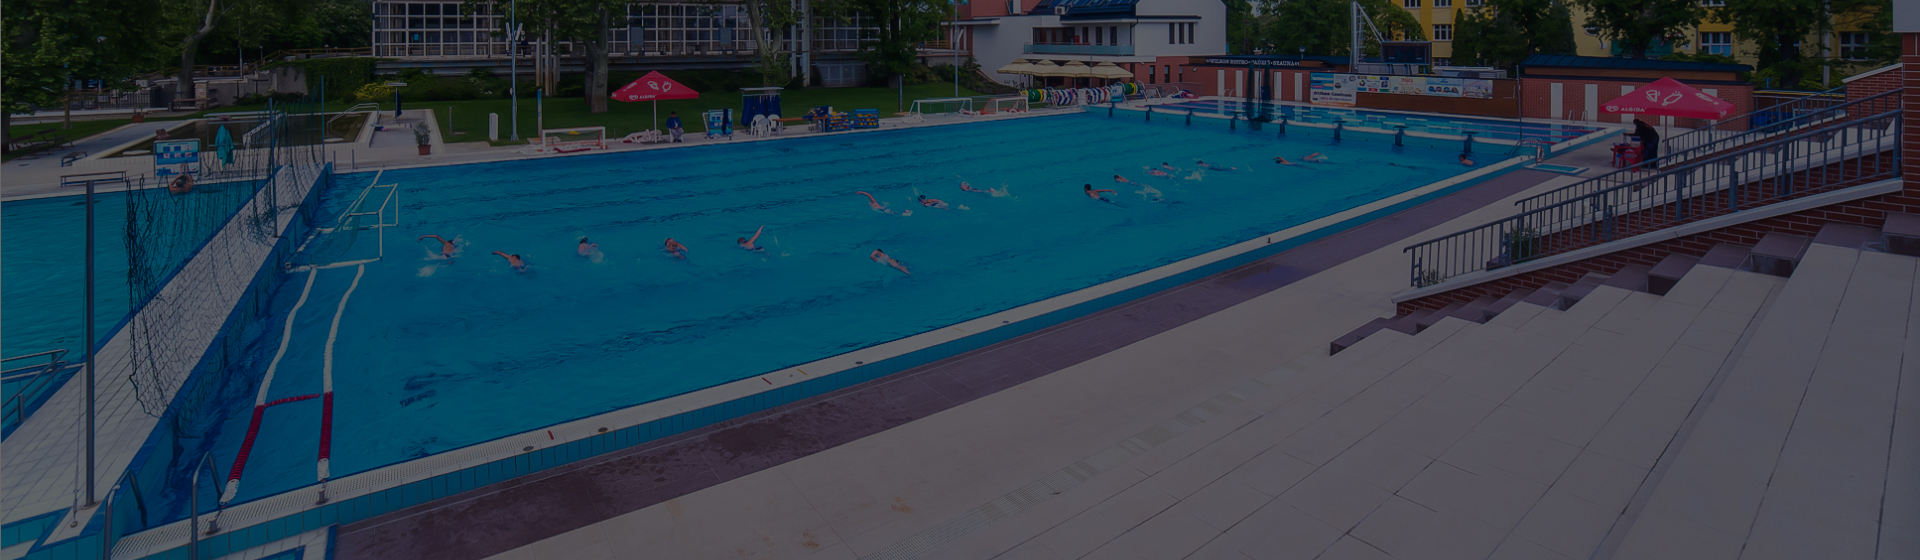 Támogatják az úszásoktatást | Ceglédi Városi Televízió, Ceglédi úszás